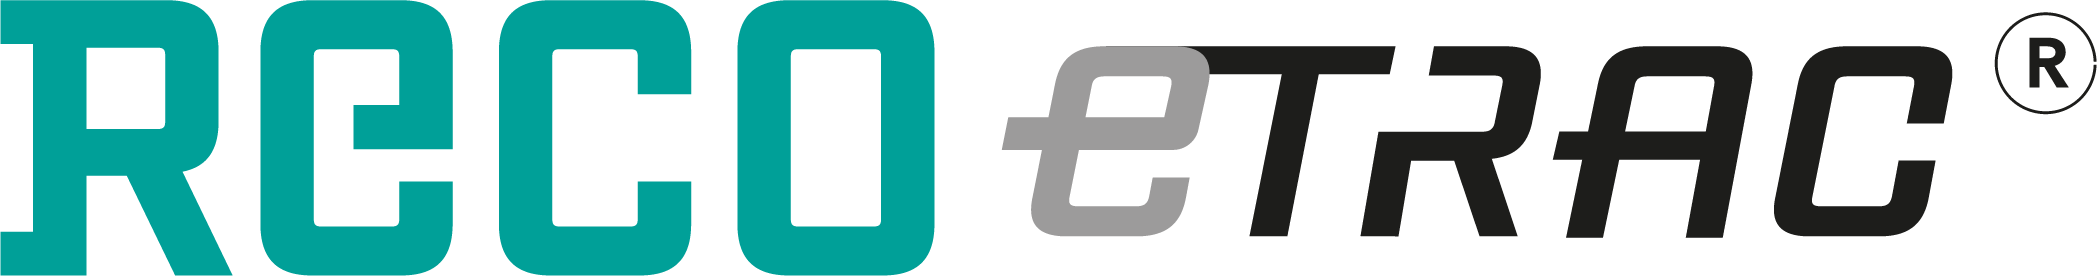 RECO eTrac Logo